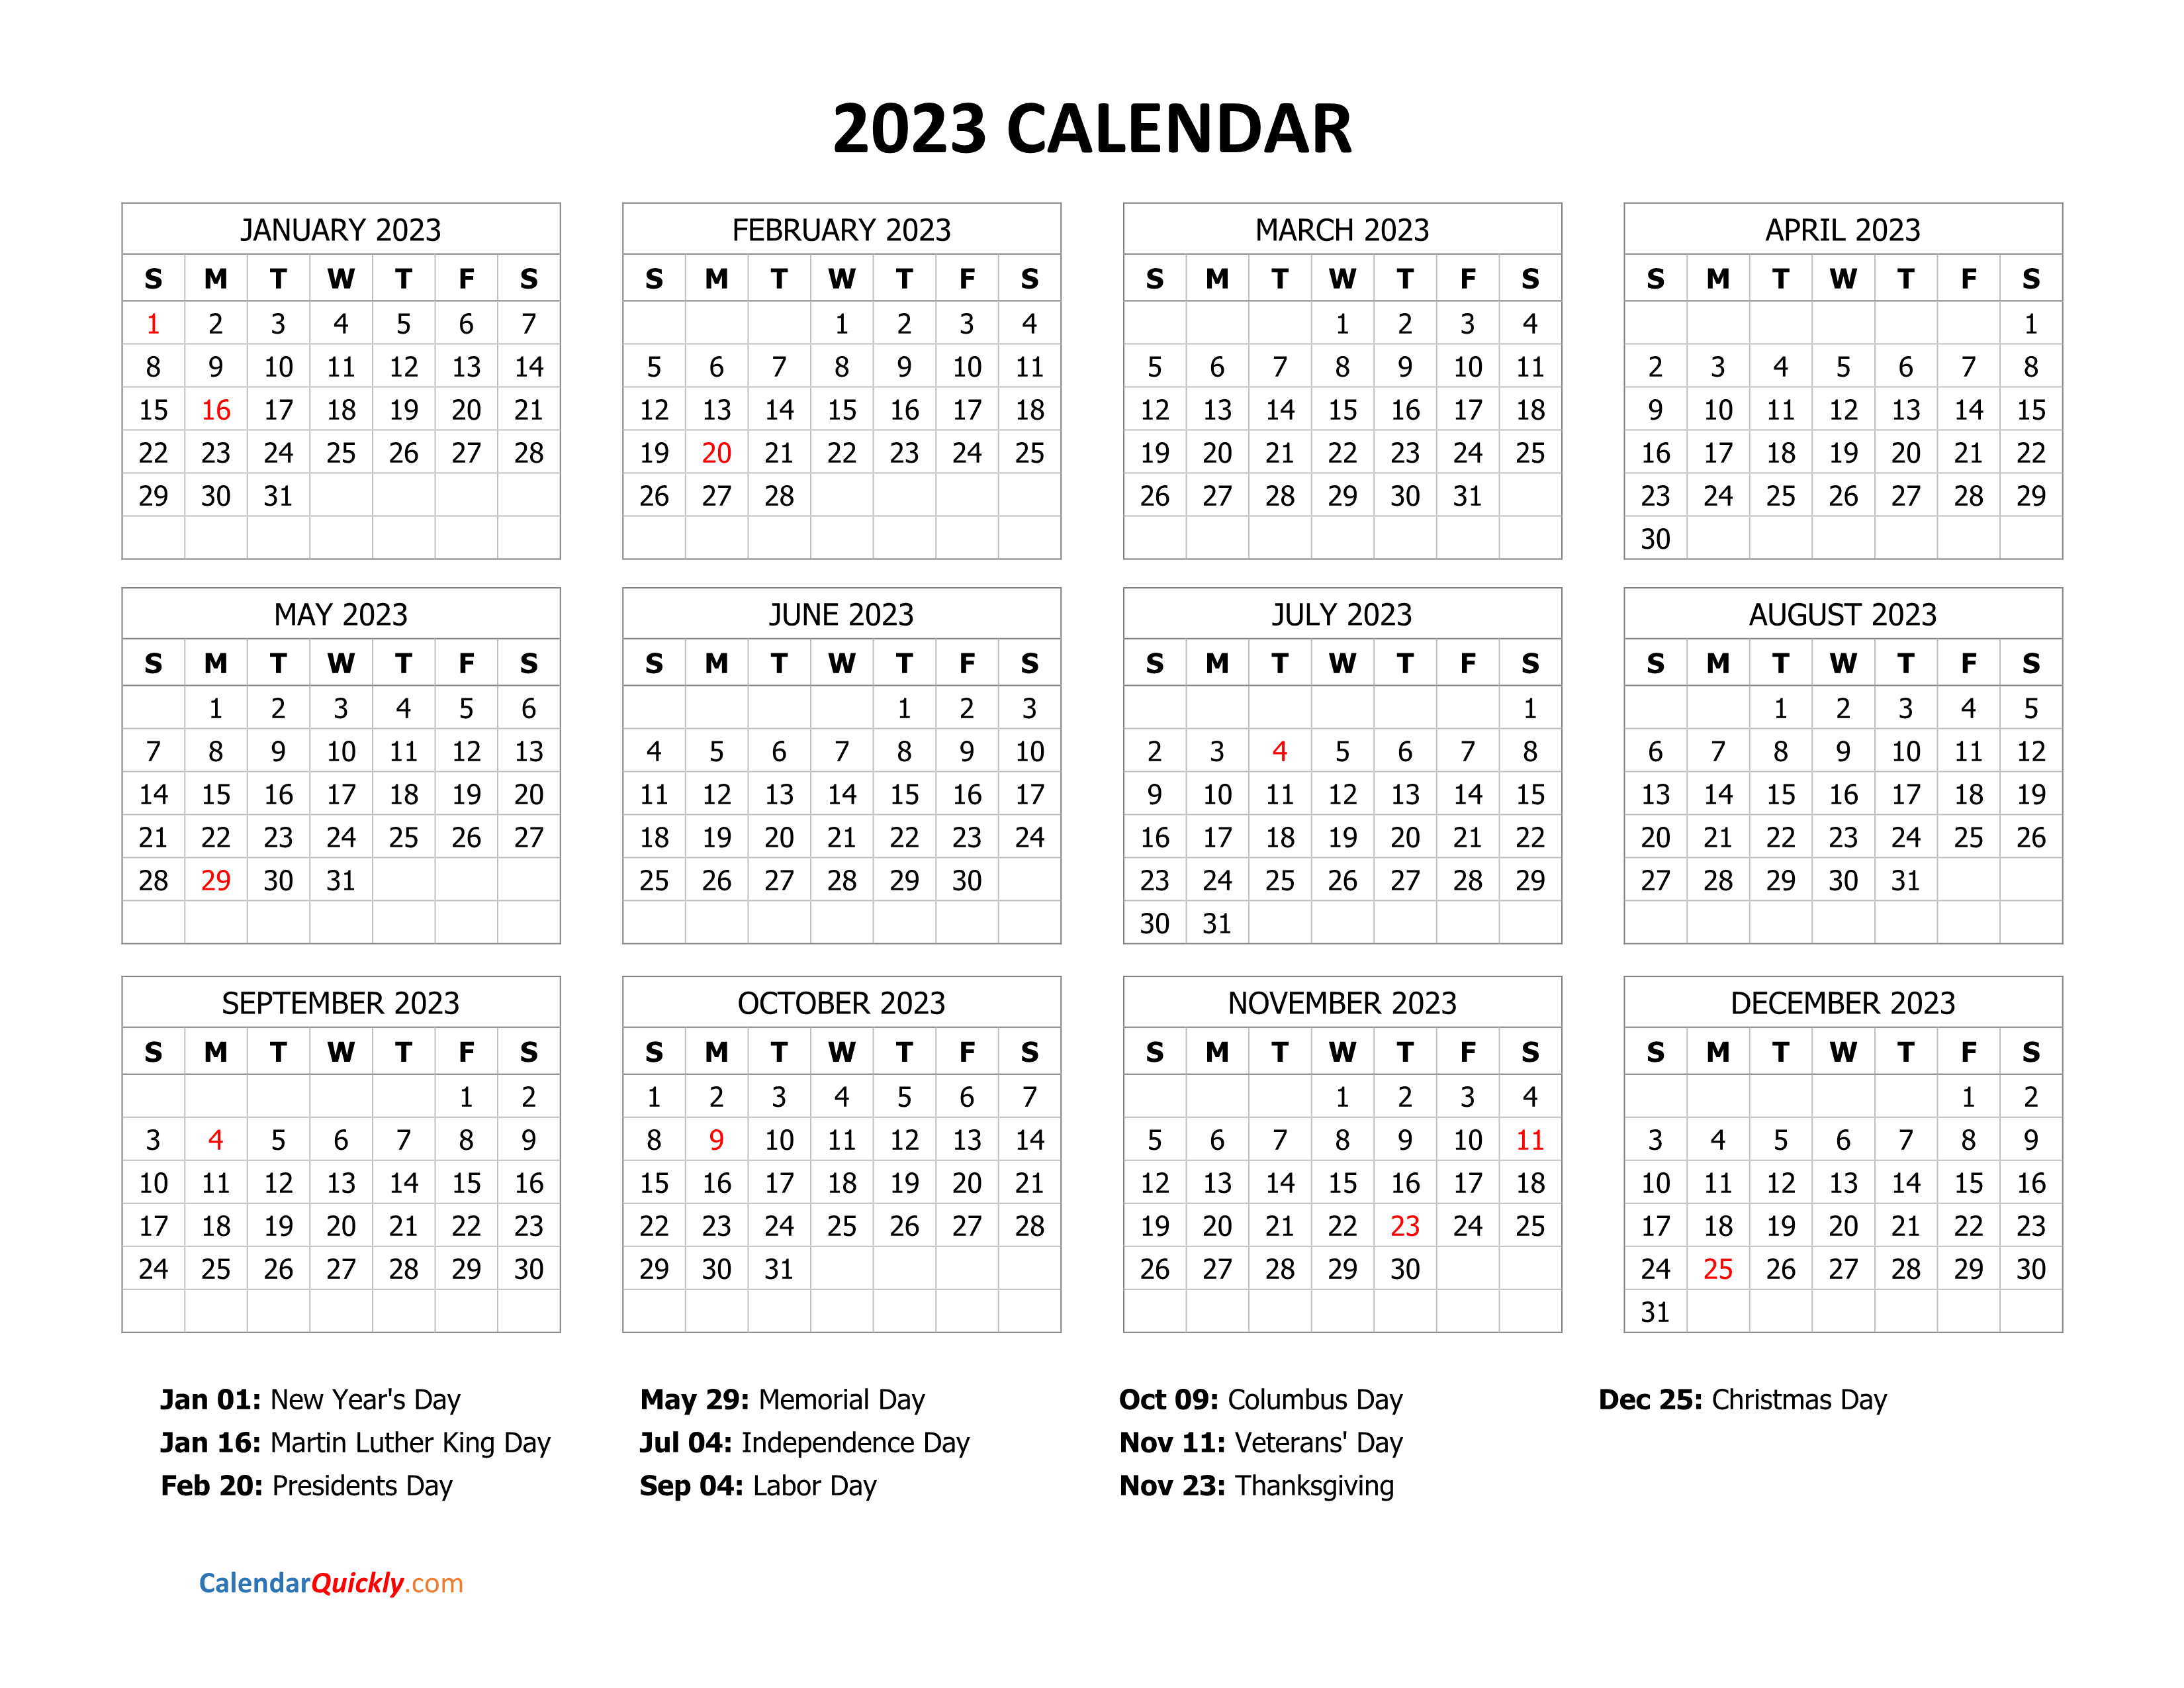 2023 Calendar With Holidays Calendar Quickly